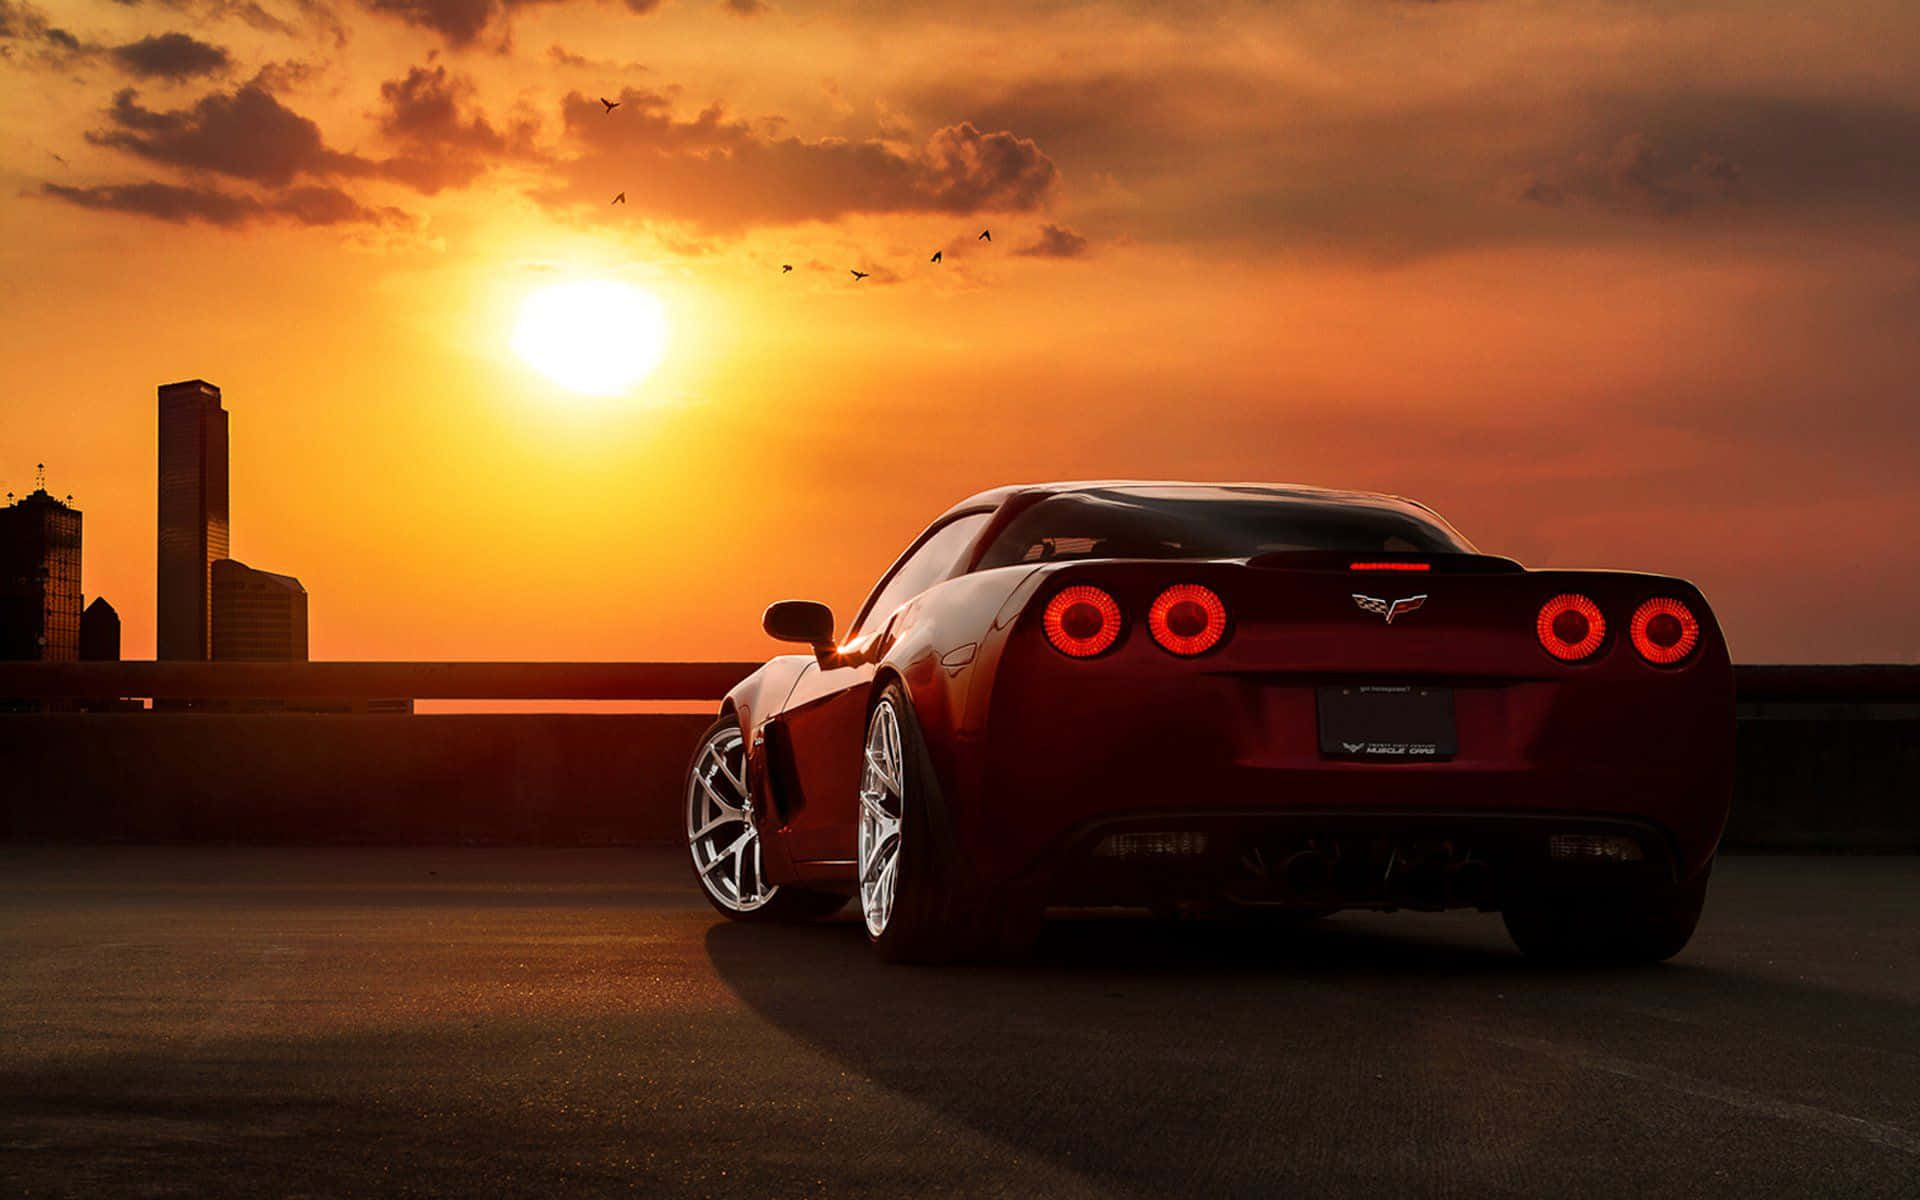 Hastighedog Stil På Vejen: En Elegant Corvette